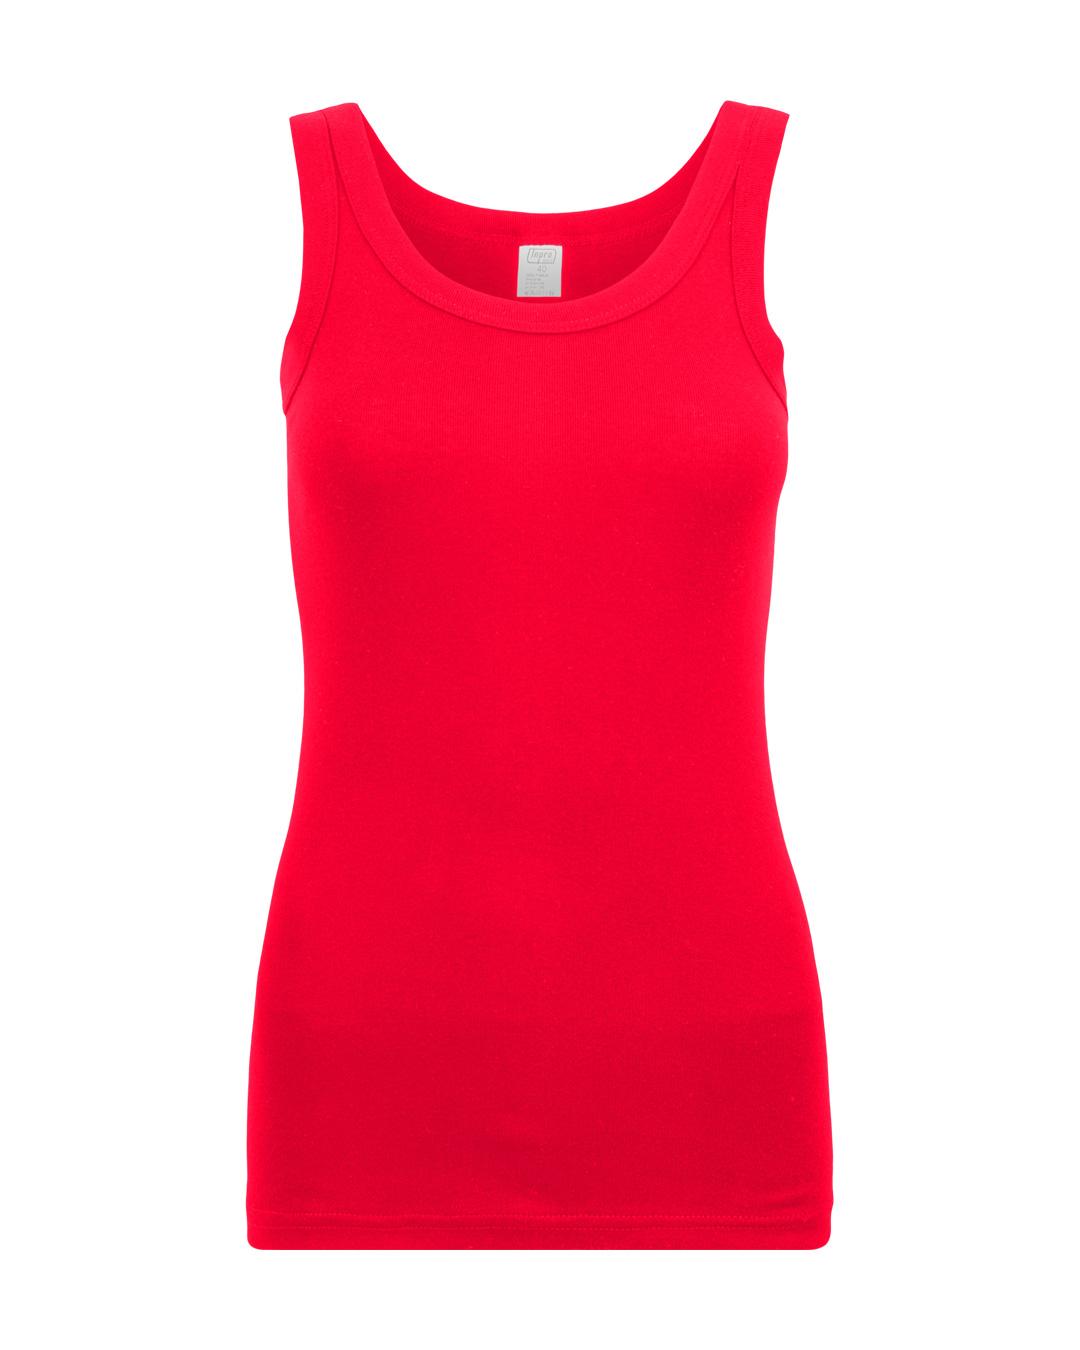 Selected image for INPRO Ženska pamučna majica sa širokim bretelama crvena